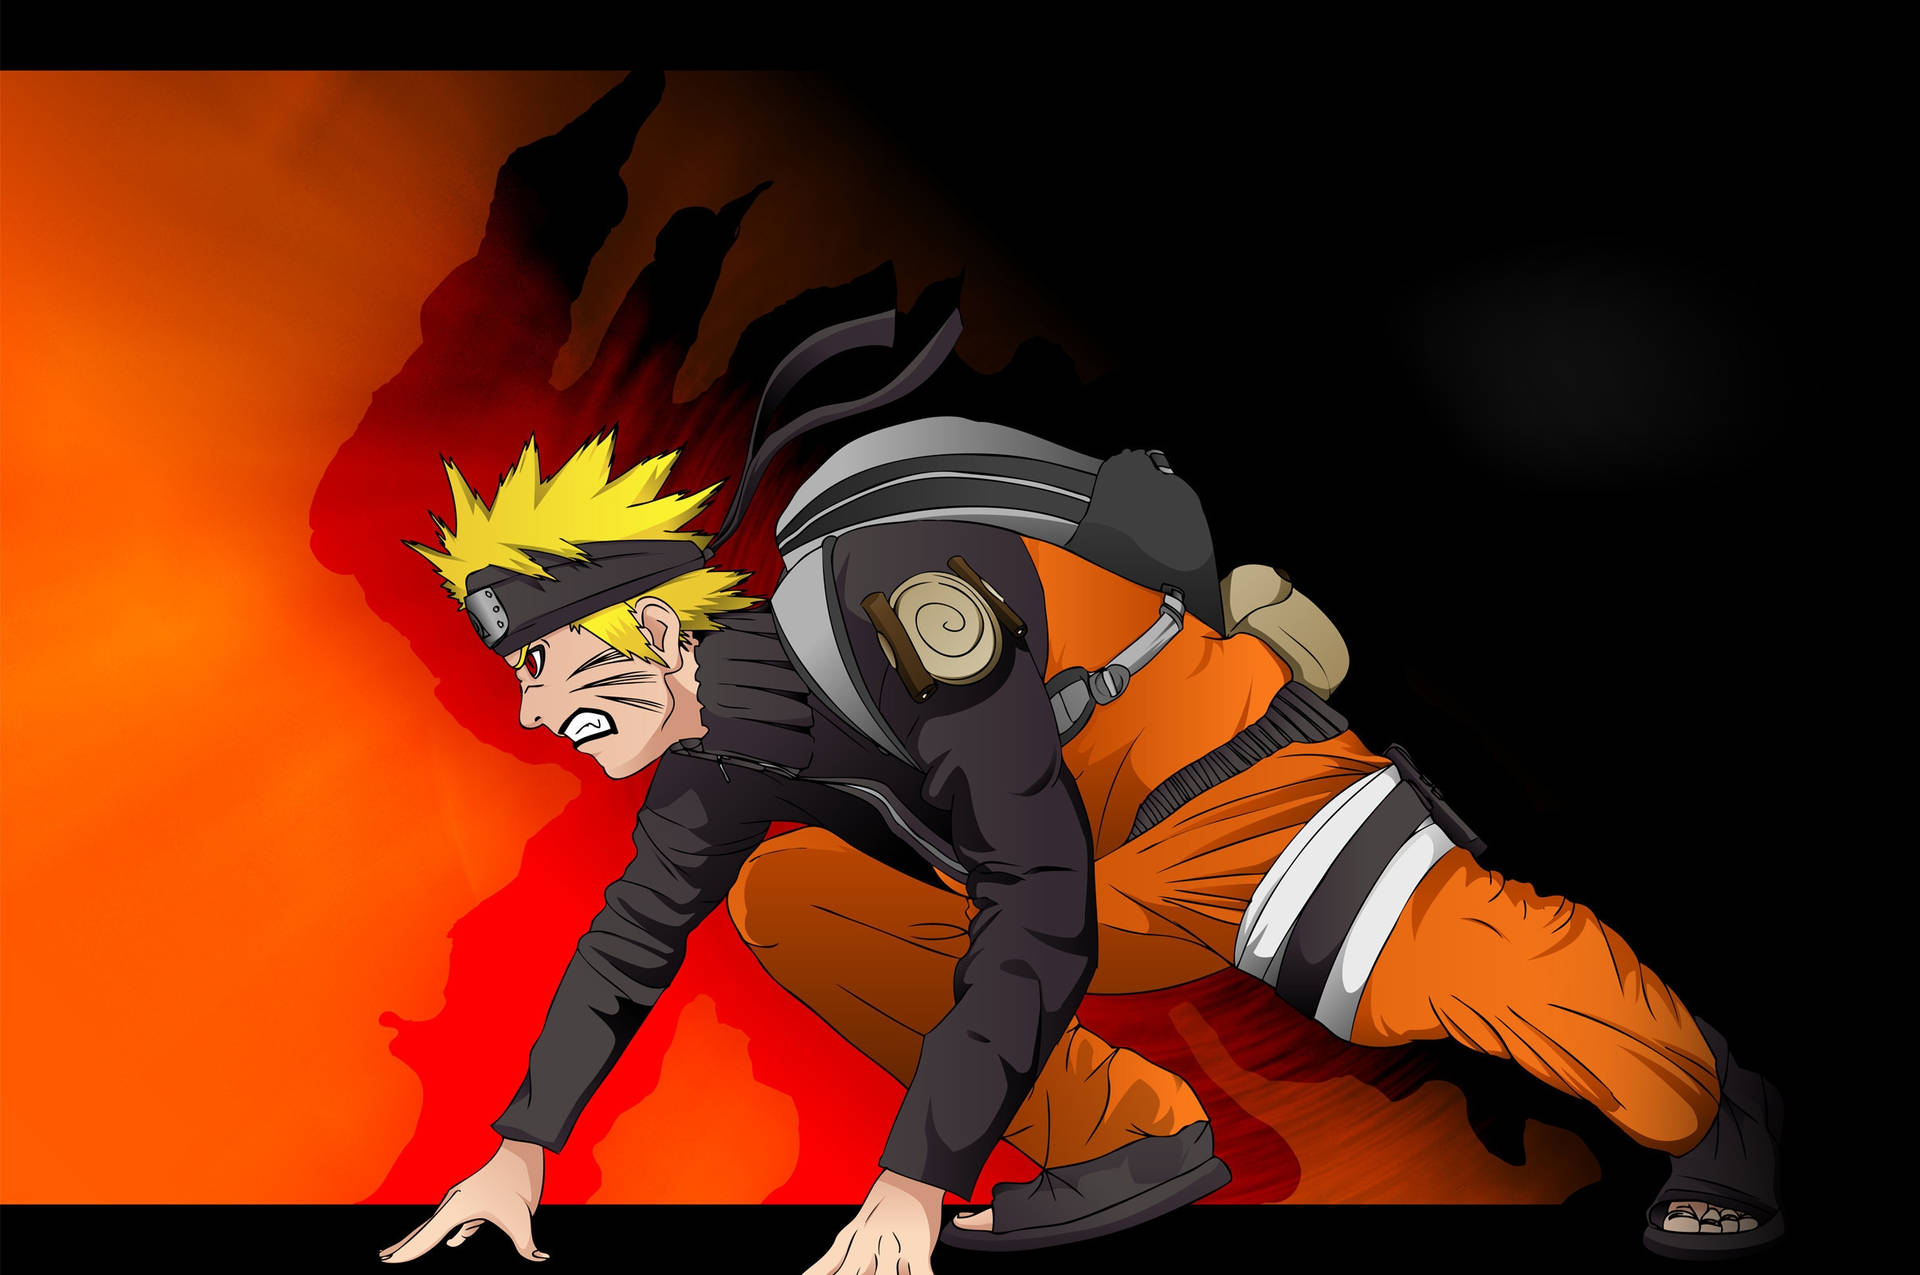 Narutokämpft In Kampfhaltung Poster Wallpaper